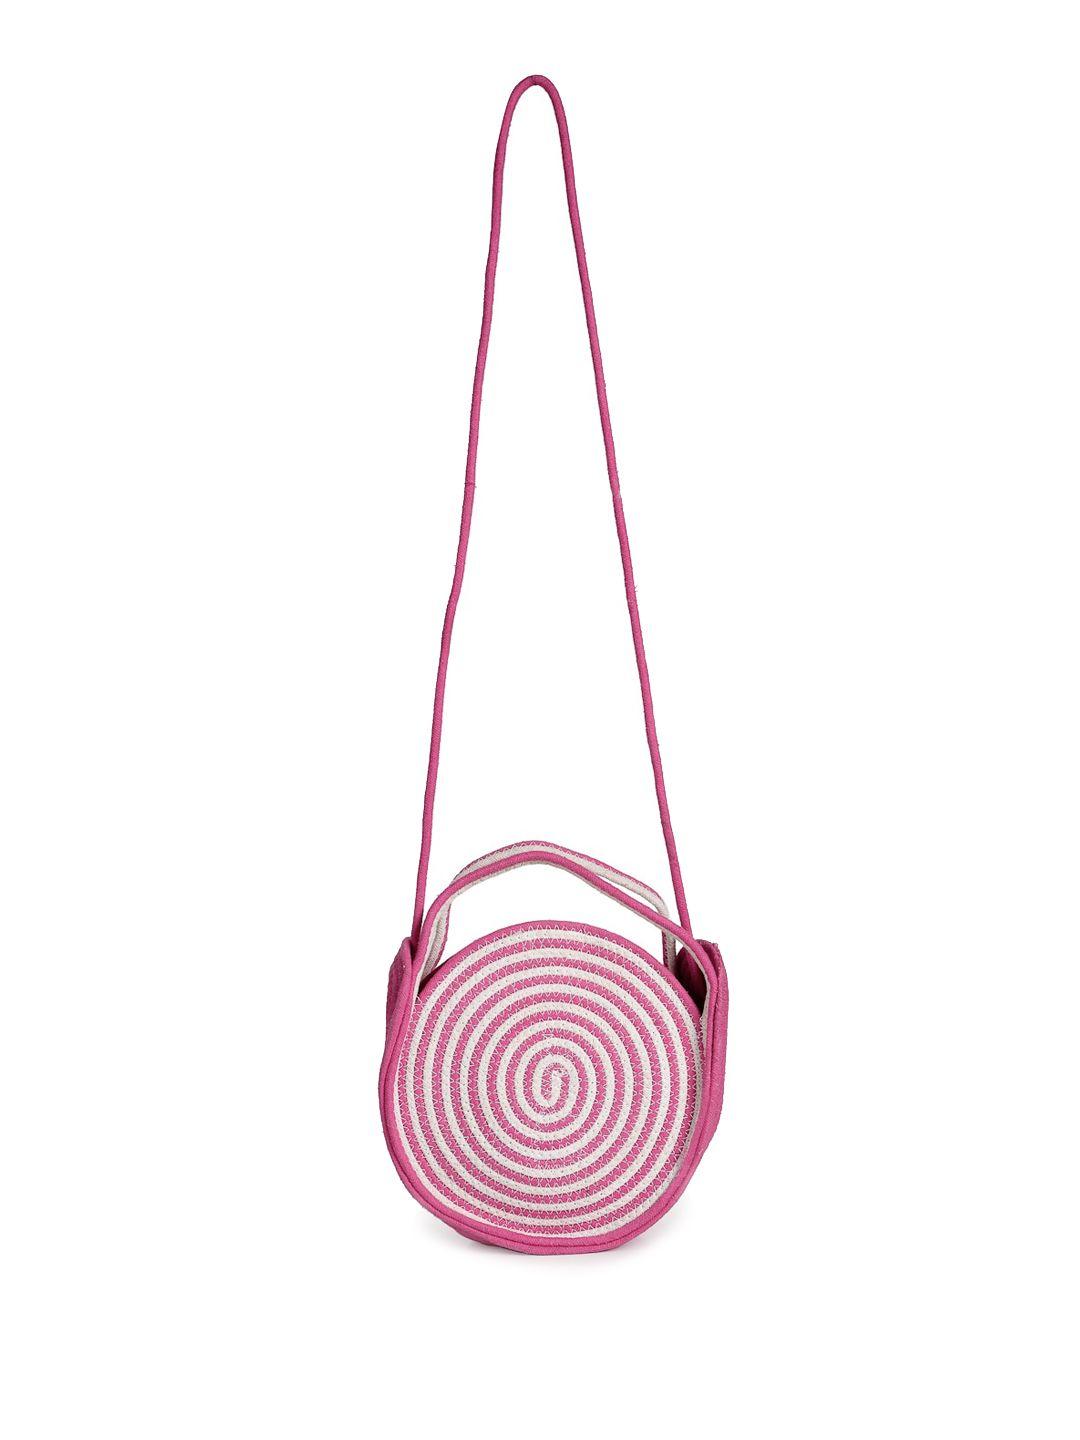 fabinaliv pink structured sling bag